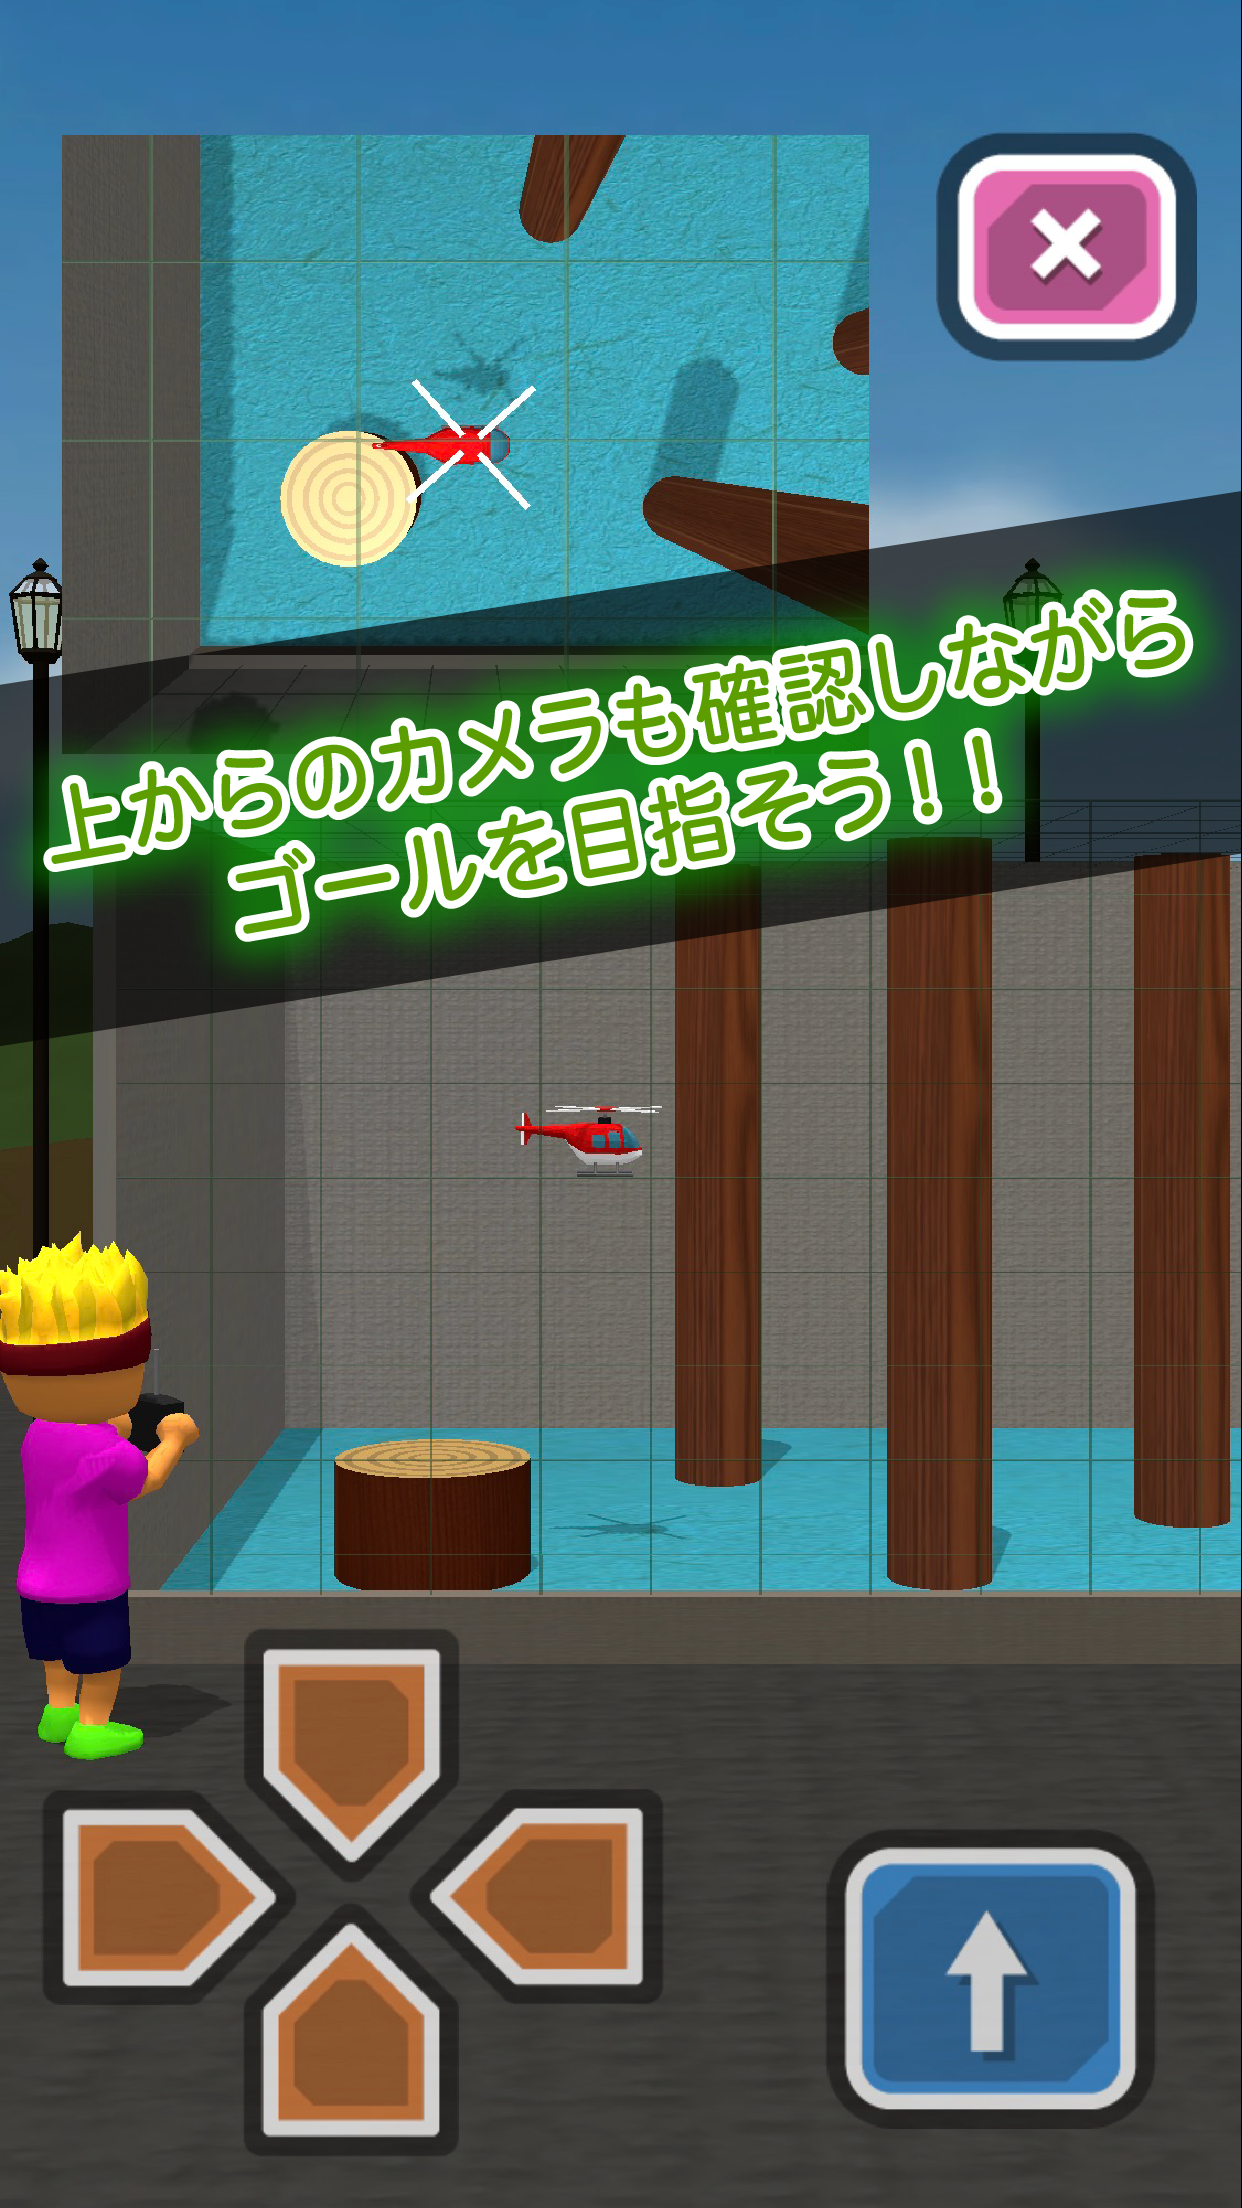 Screenshot 1 of Tony-kun ၏ ရေဒီယိုထိန်းချုပ်ရဟတ်ယာဉ်အသစ် 1.0